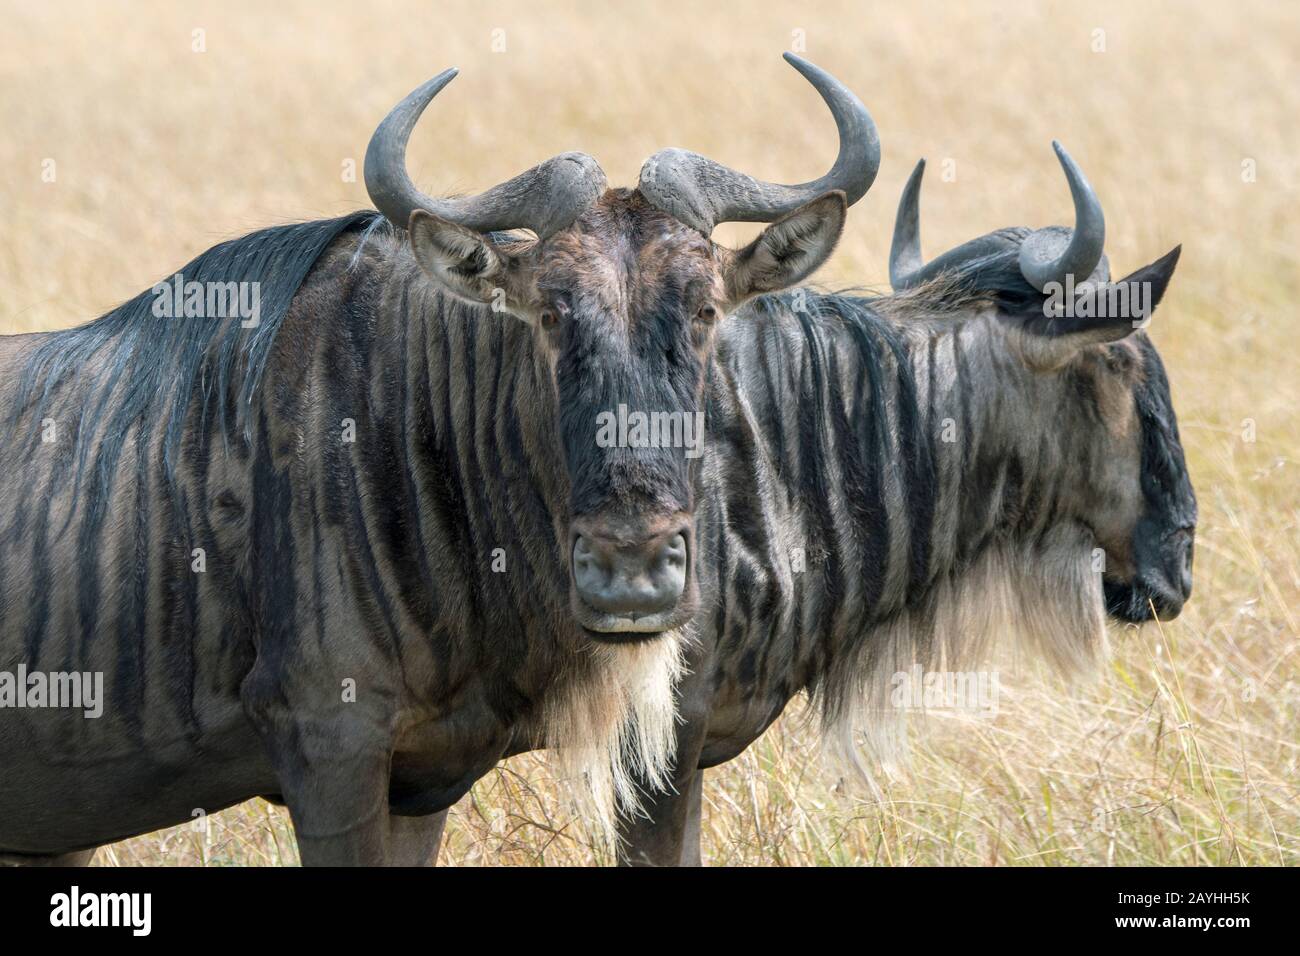 Primo piano di un'azienda, detta anche gnus o wildehai, nelle praterie del Masai Mara in Kenya. Foto Stock